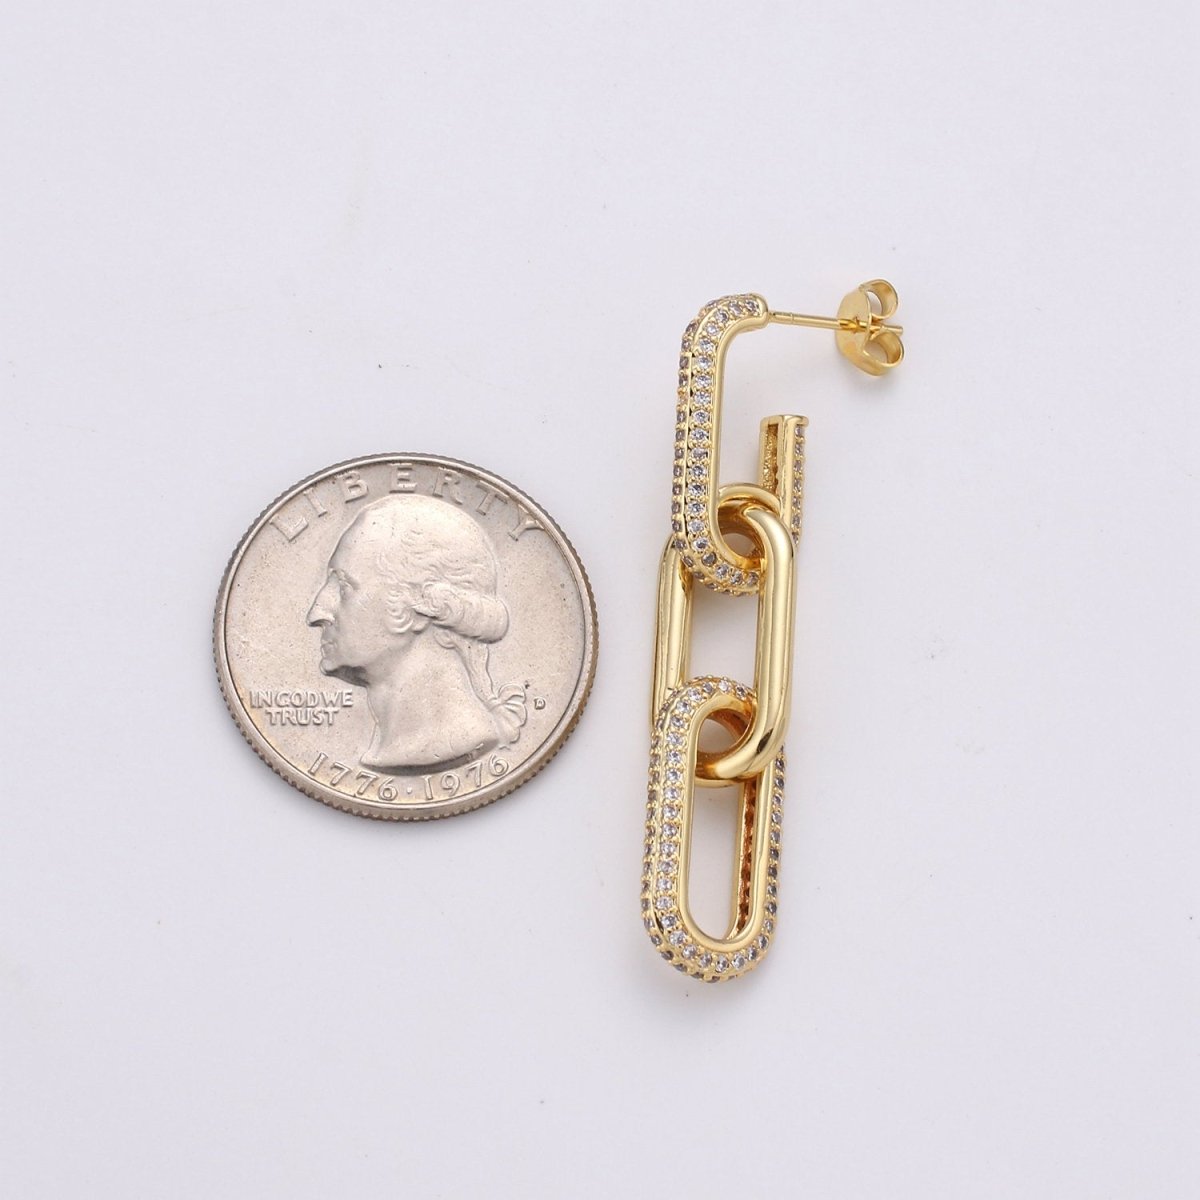 Chunky Chain Link Earrings, Gold Link Earrings, Gold Drop Earrings, Gold Dangle Earrings, 24k Gold Filled Earrings, Micro Pave CZ Earrings K-579 K-580 - DLUXCA